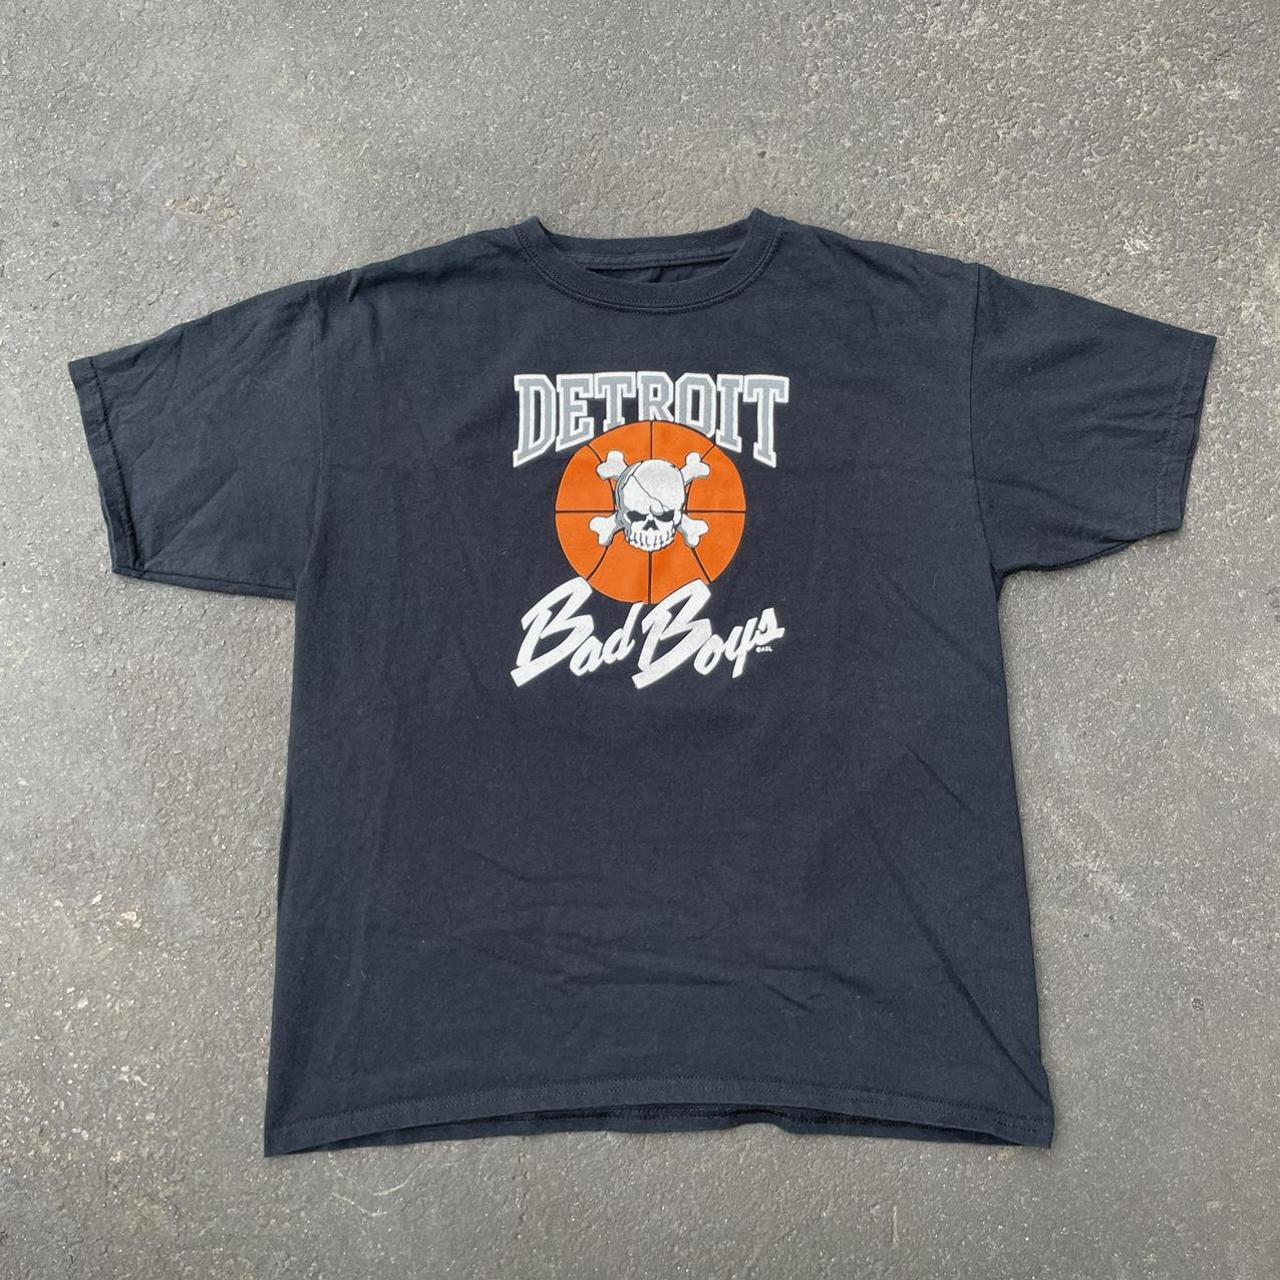 Detroit Bad Boys Authentic Men's T-Shirt by Vintage Detroit Collection